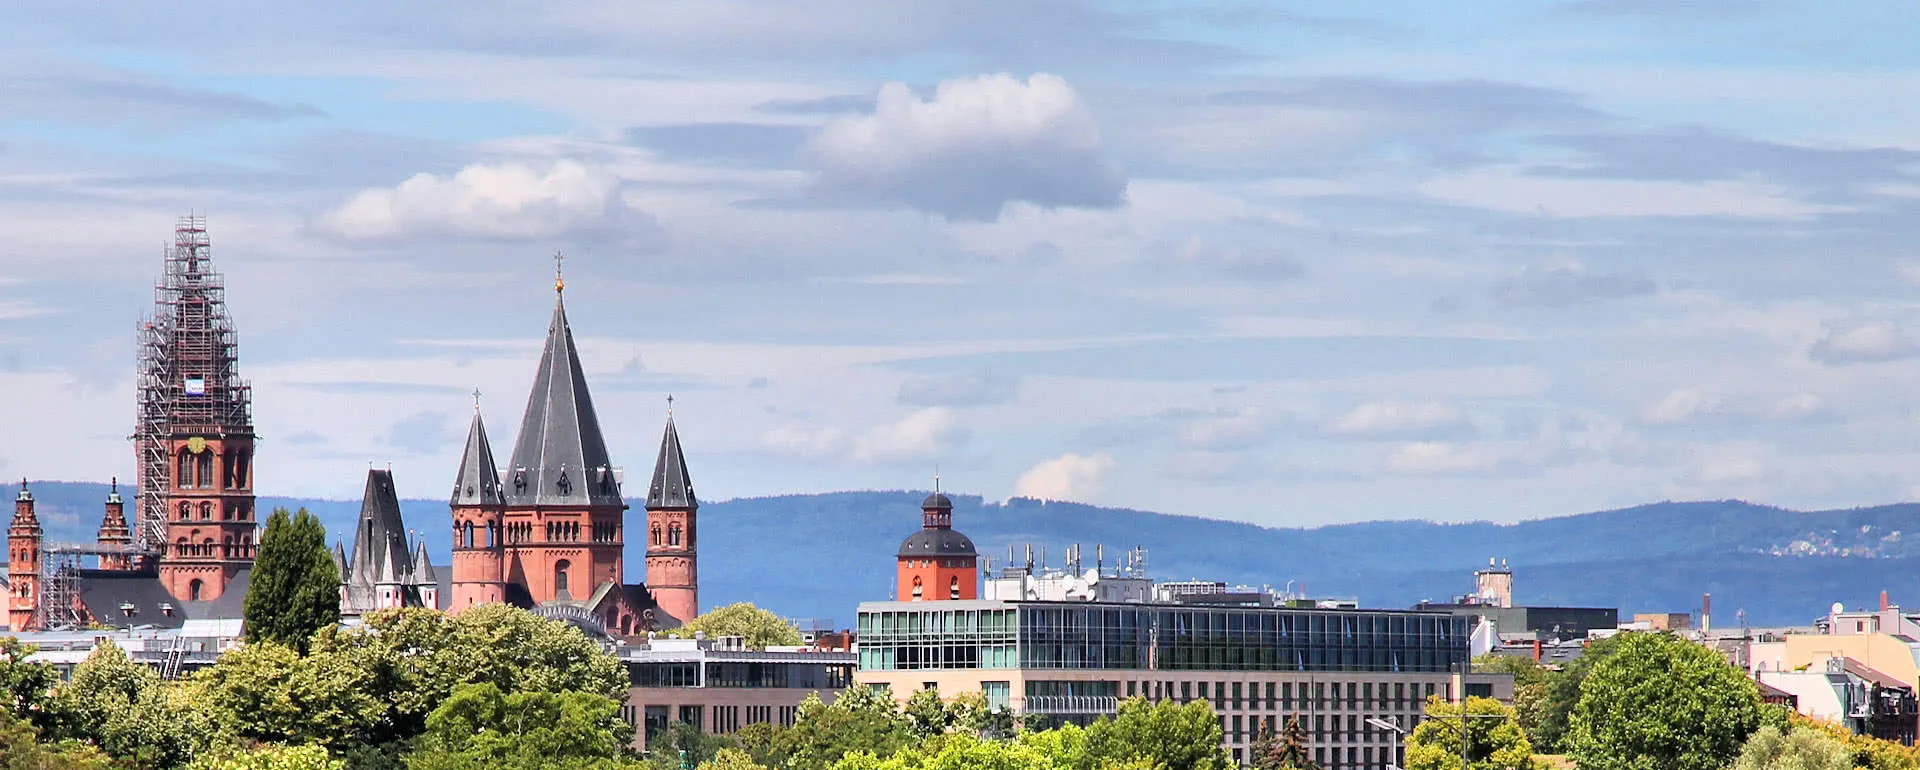 Mainz panorama image